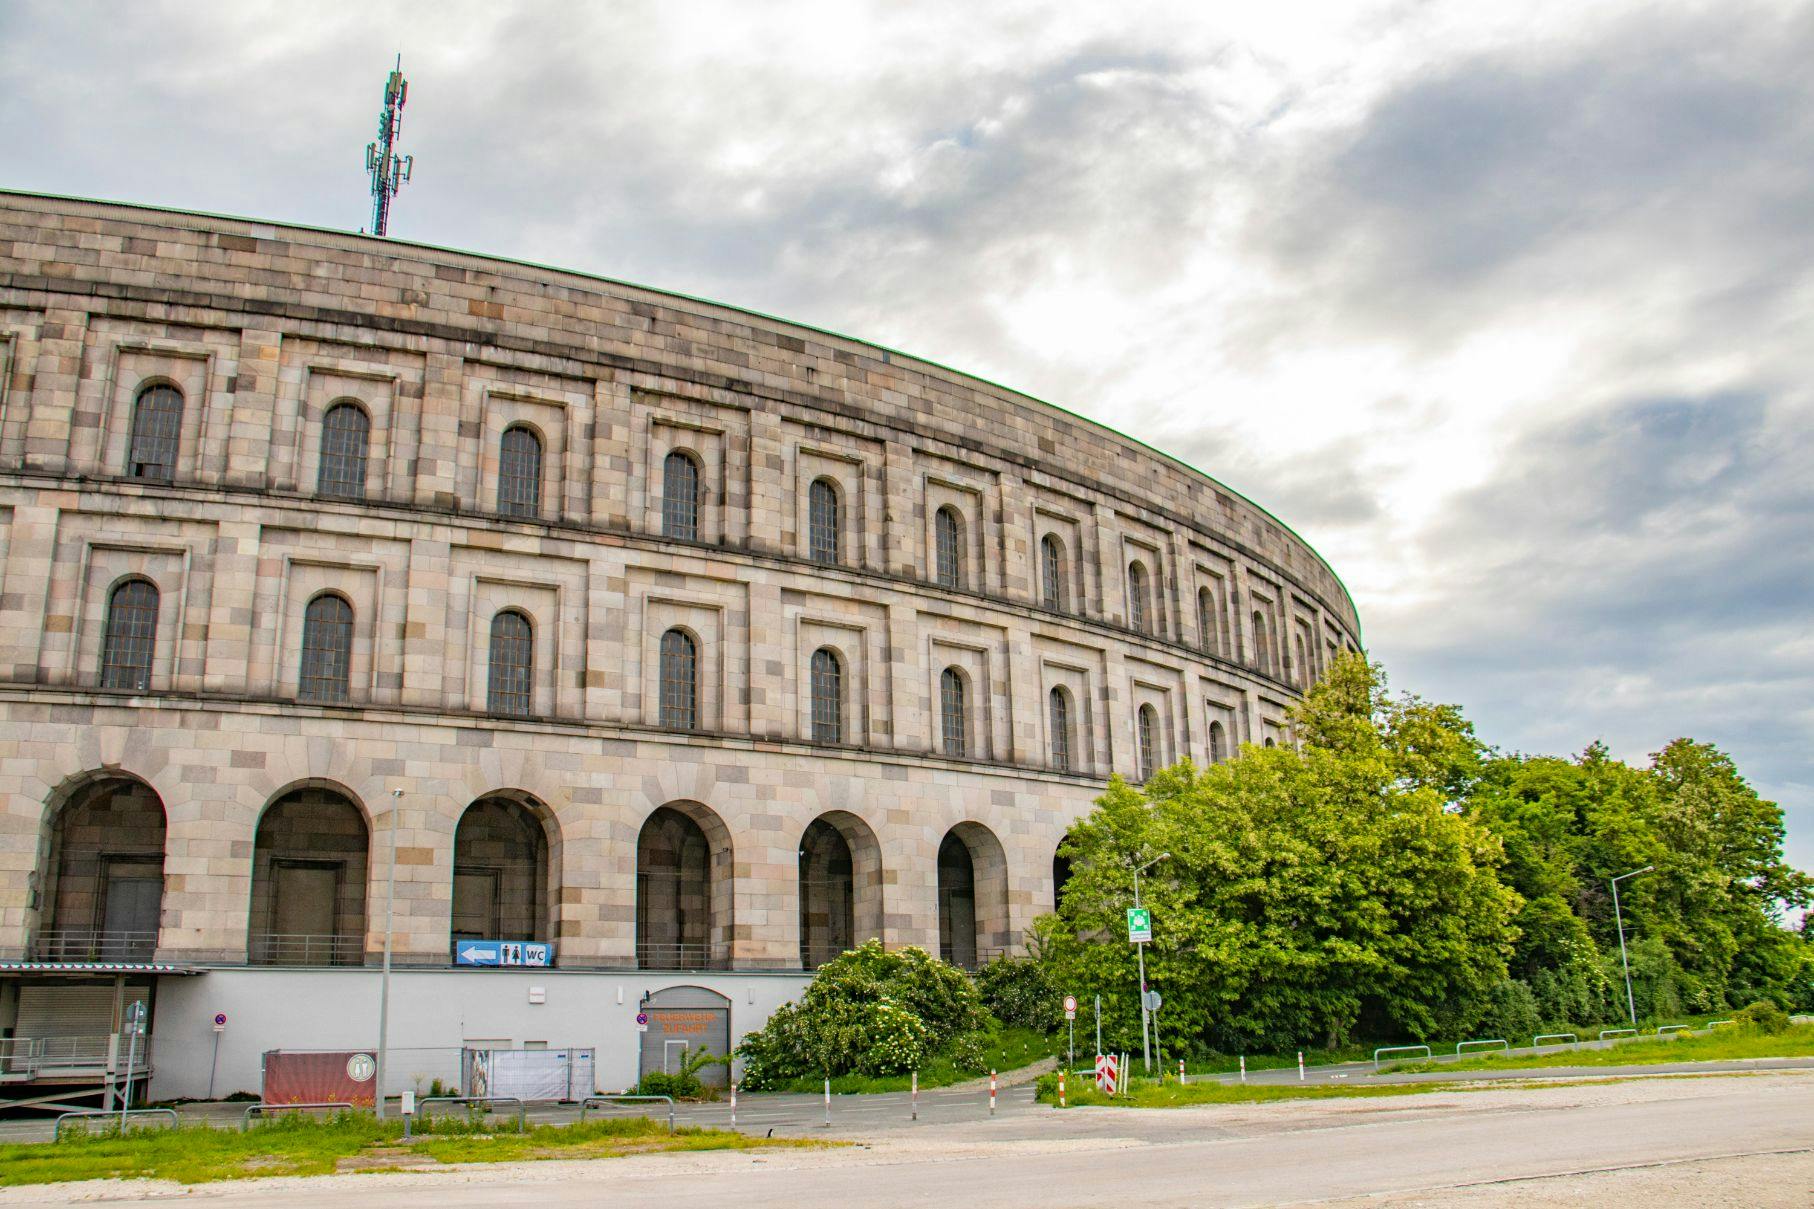 Explore Nuremberg em 60 minutos com um local